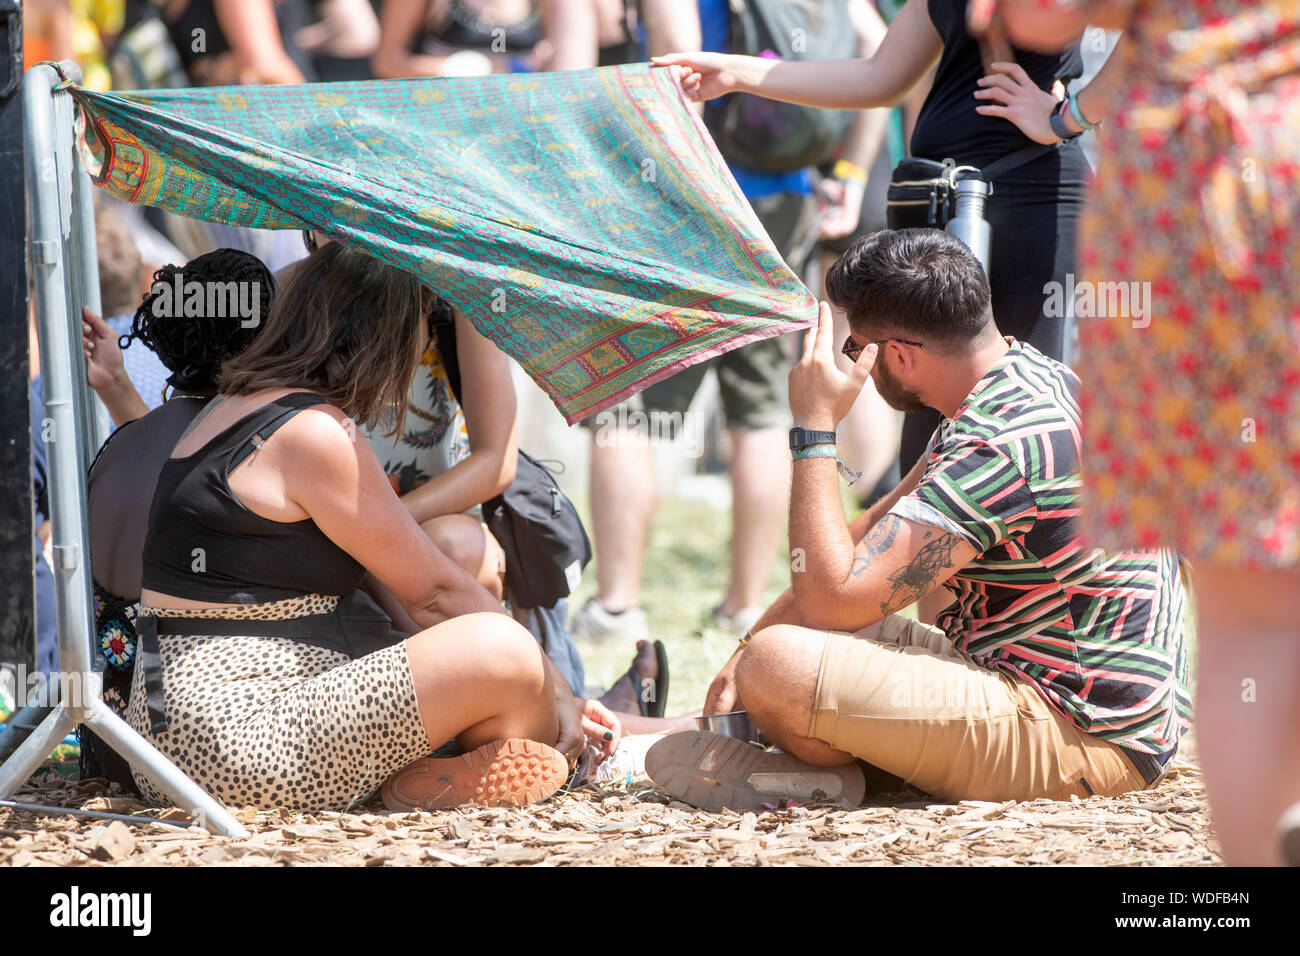 Fêtards s'improviser quelque ombre en utilisant un sarong près de l'autre étape au festival de Glastonbury 2019 dans Pilton, Somerset Banque D'Images